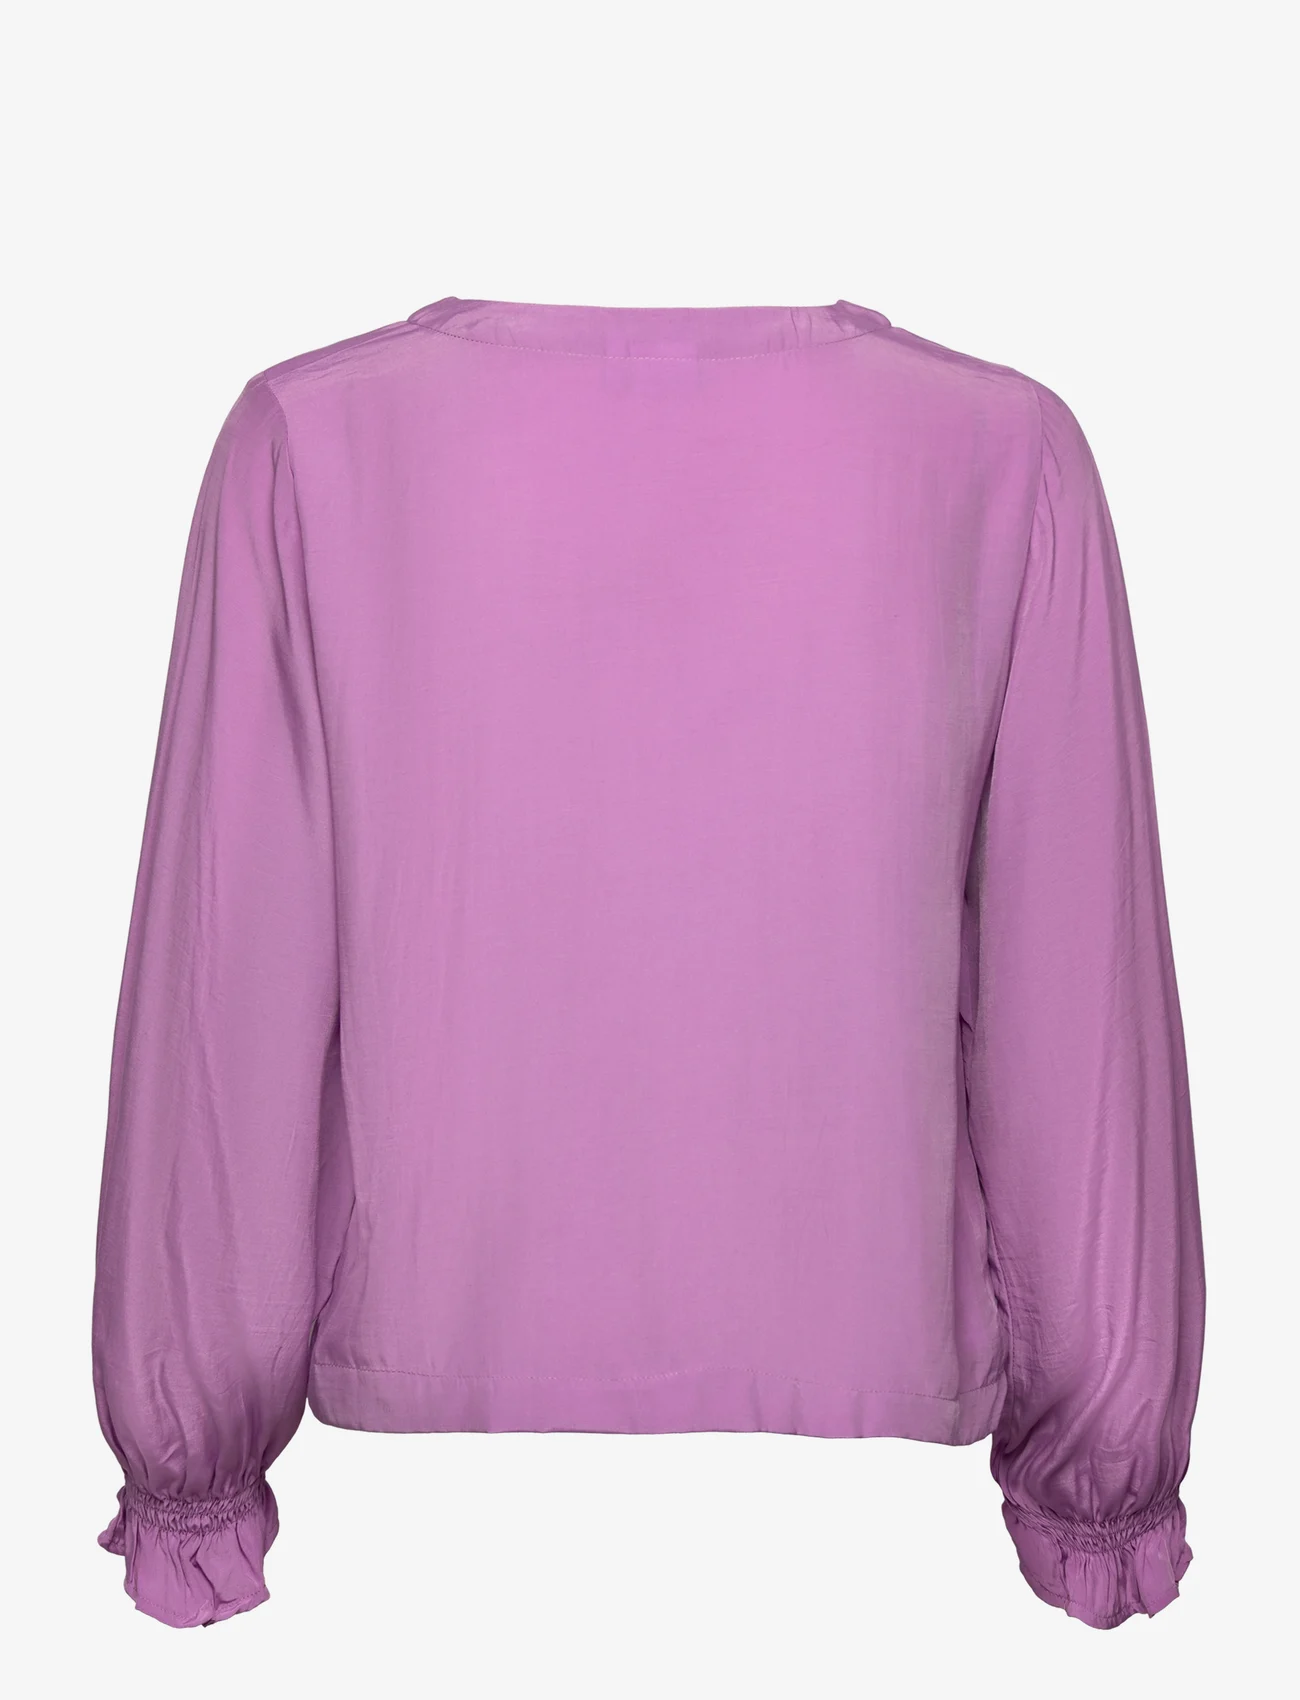 Nümph - NUYVETTE SHIRT - long-sleeved shirts - african violet - 1